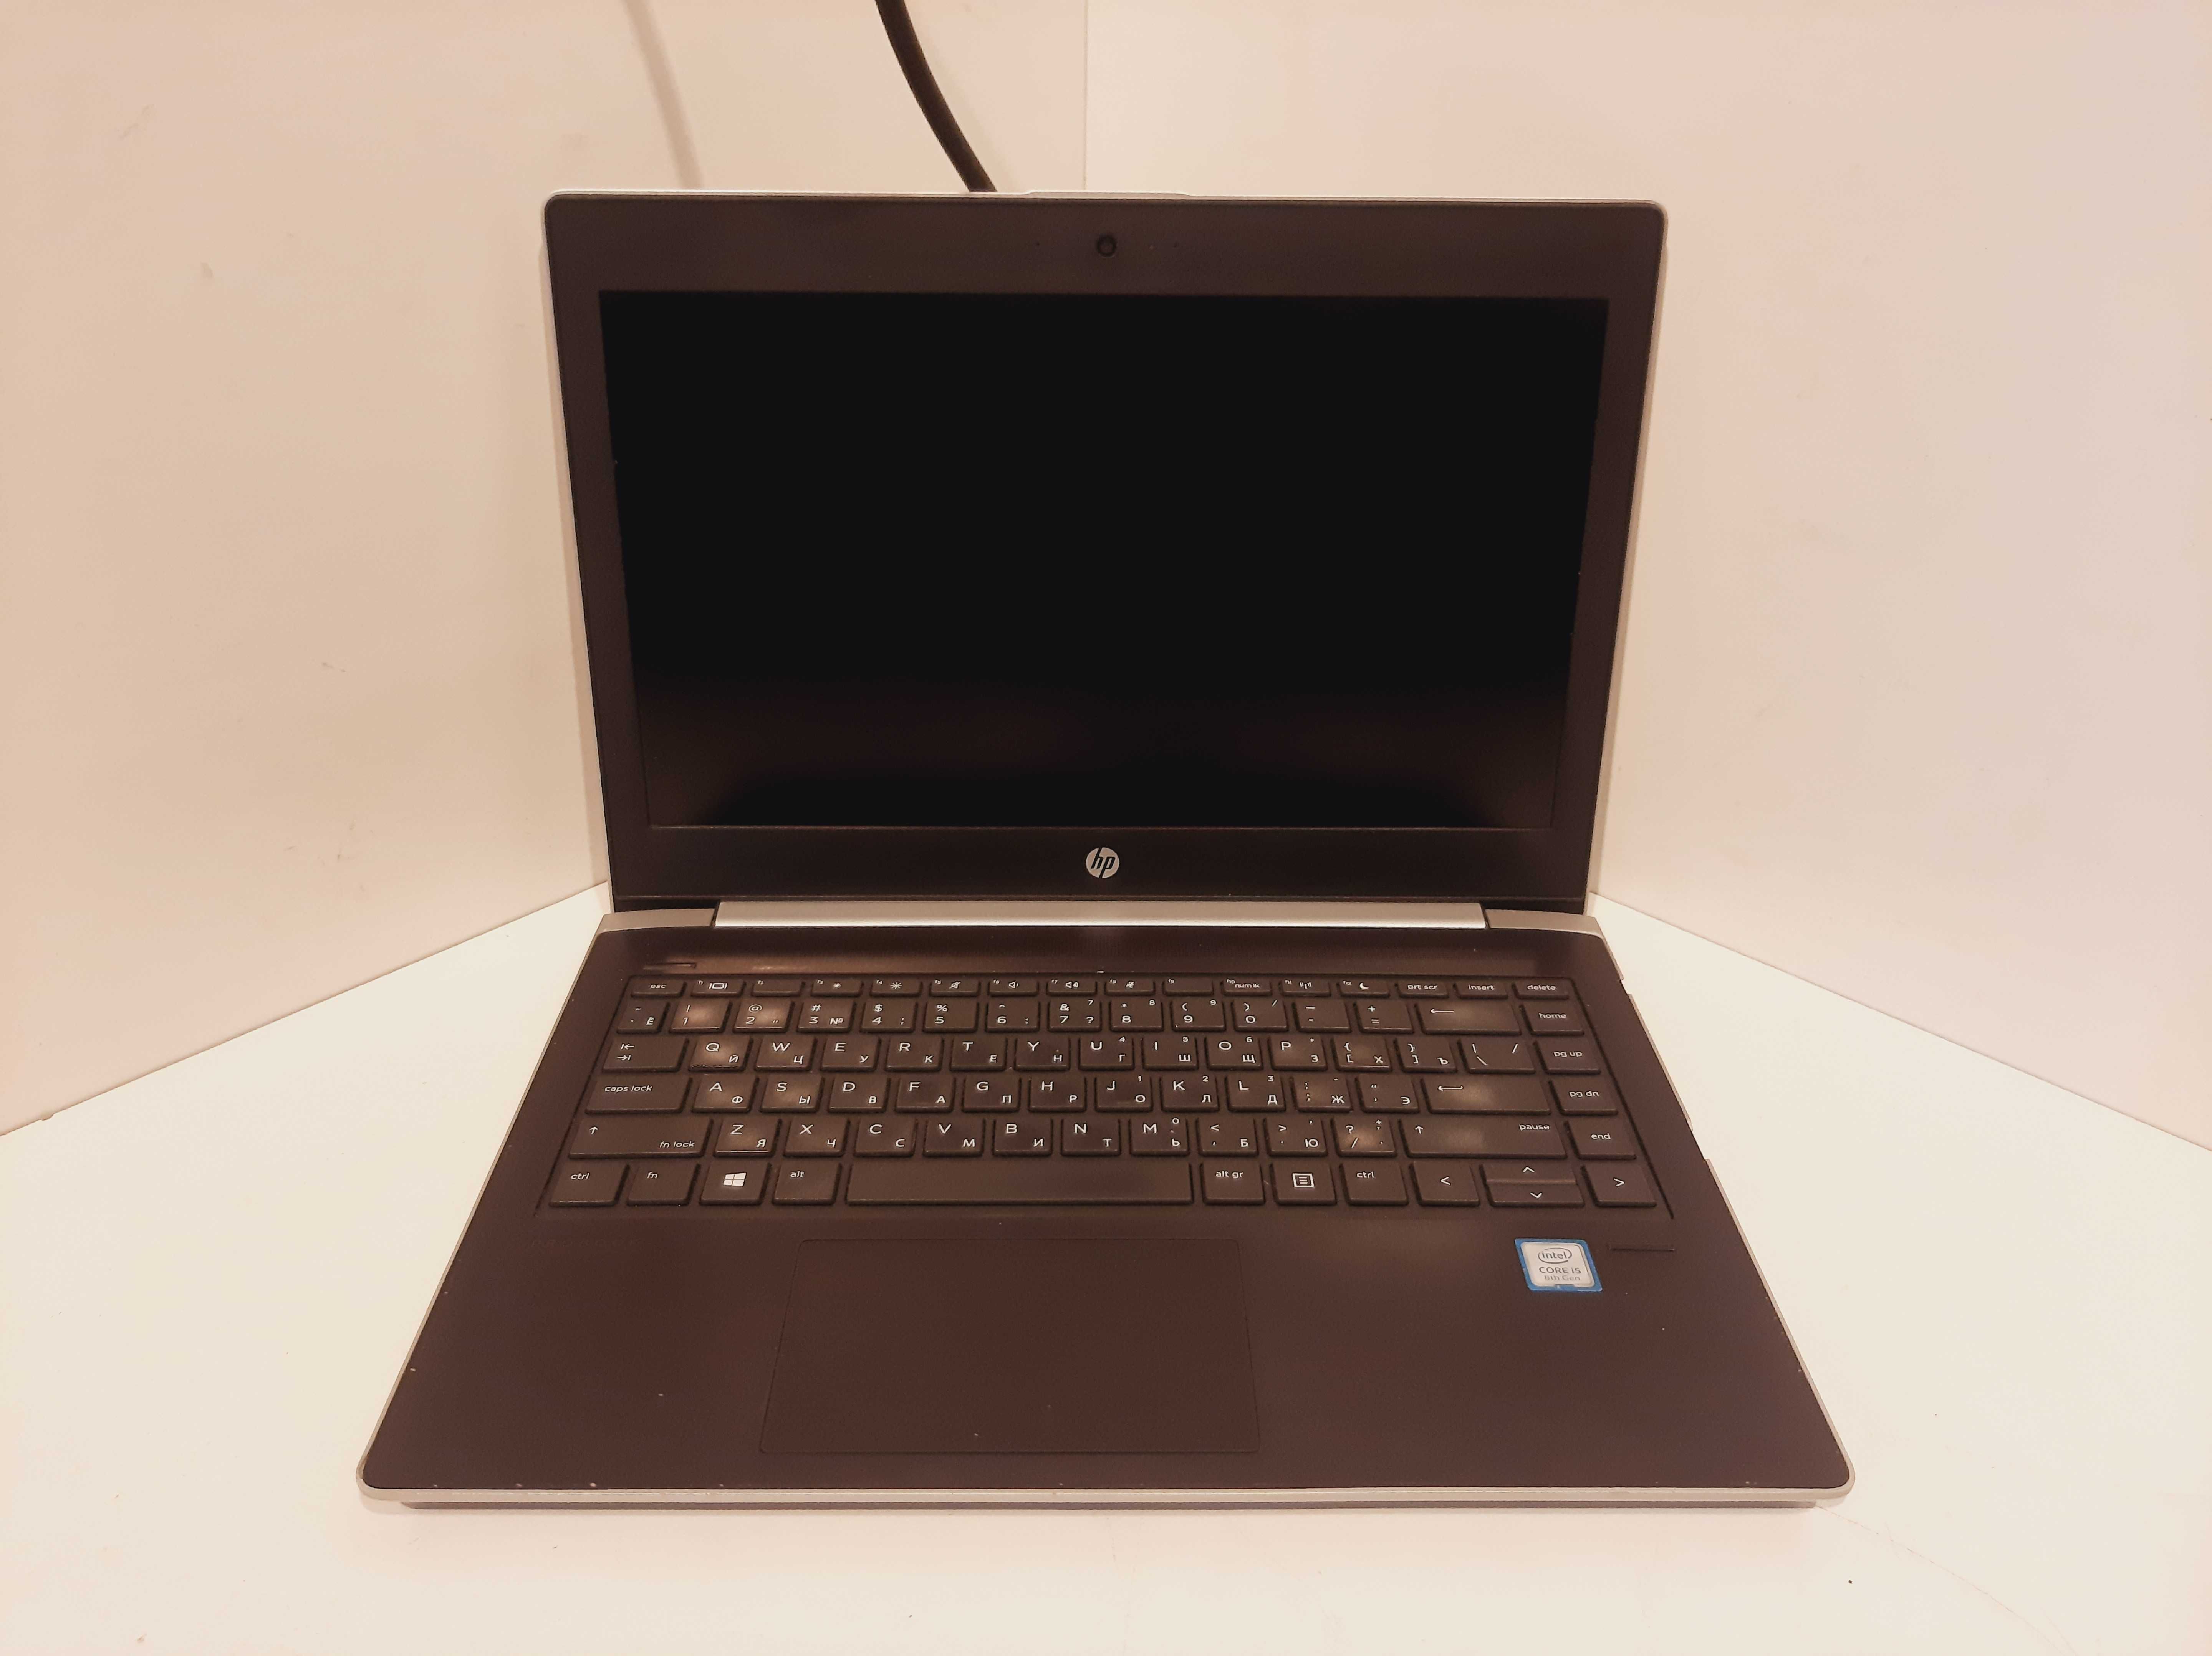 Ноутбук HP ProBook 430 G5, IPS1920x1080, Intel Core i5-8250U